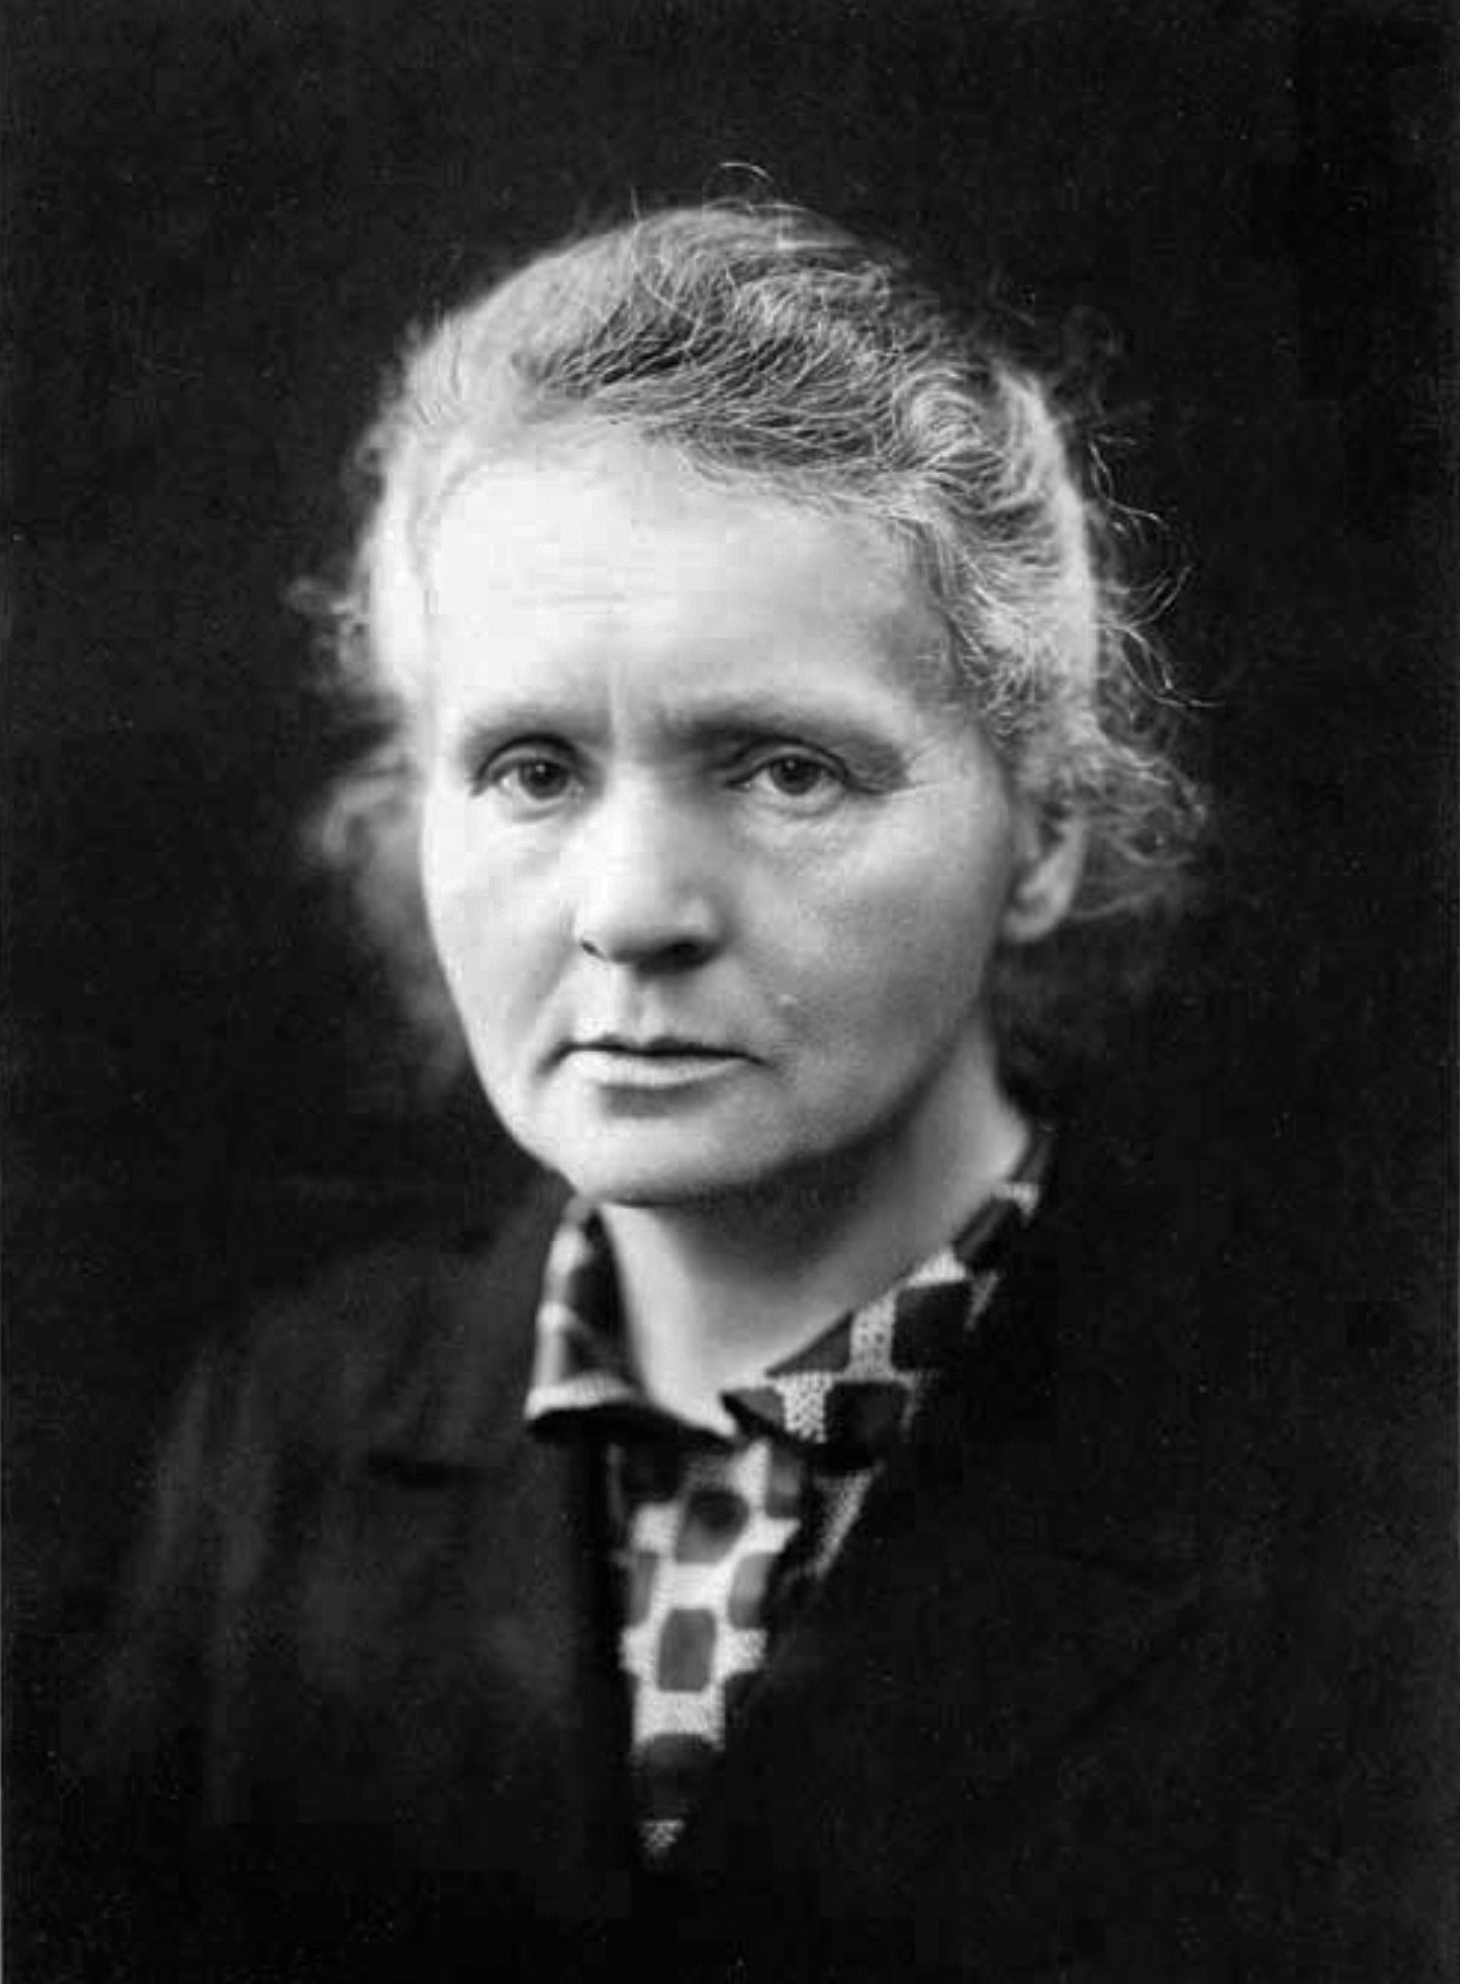 auteur Marie Curie de la citation On m'a appris que le chemin du progrès n'était ni rapide ni facile.